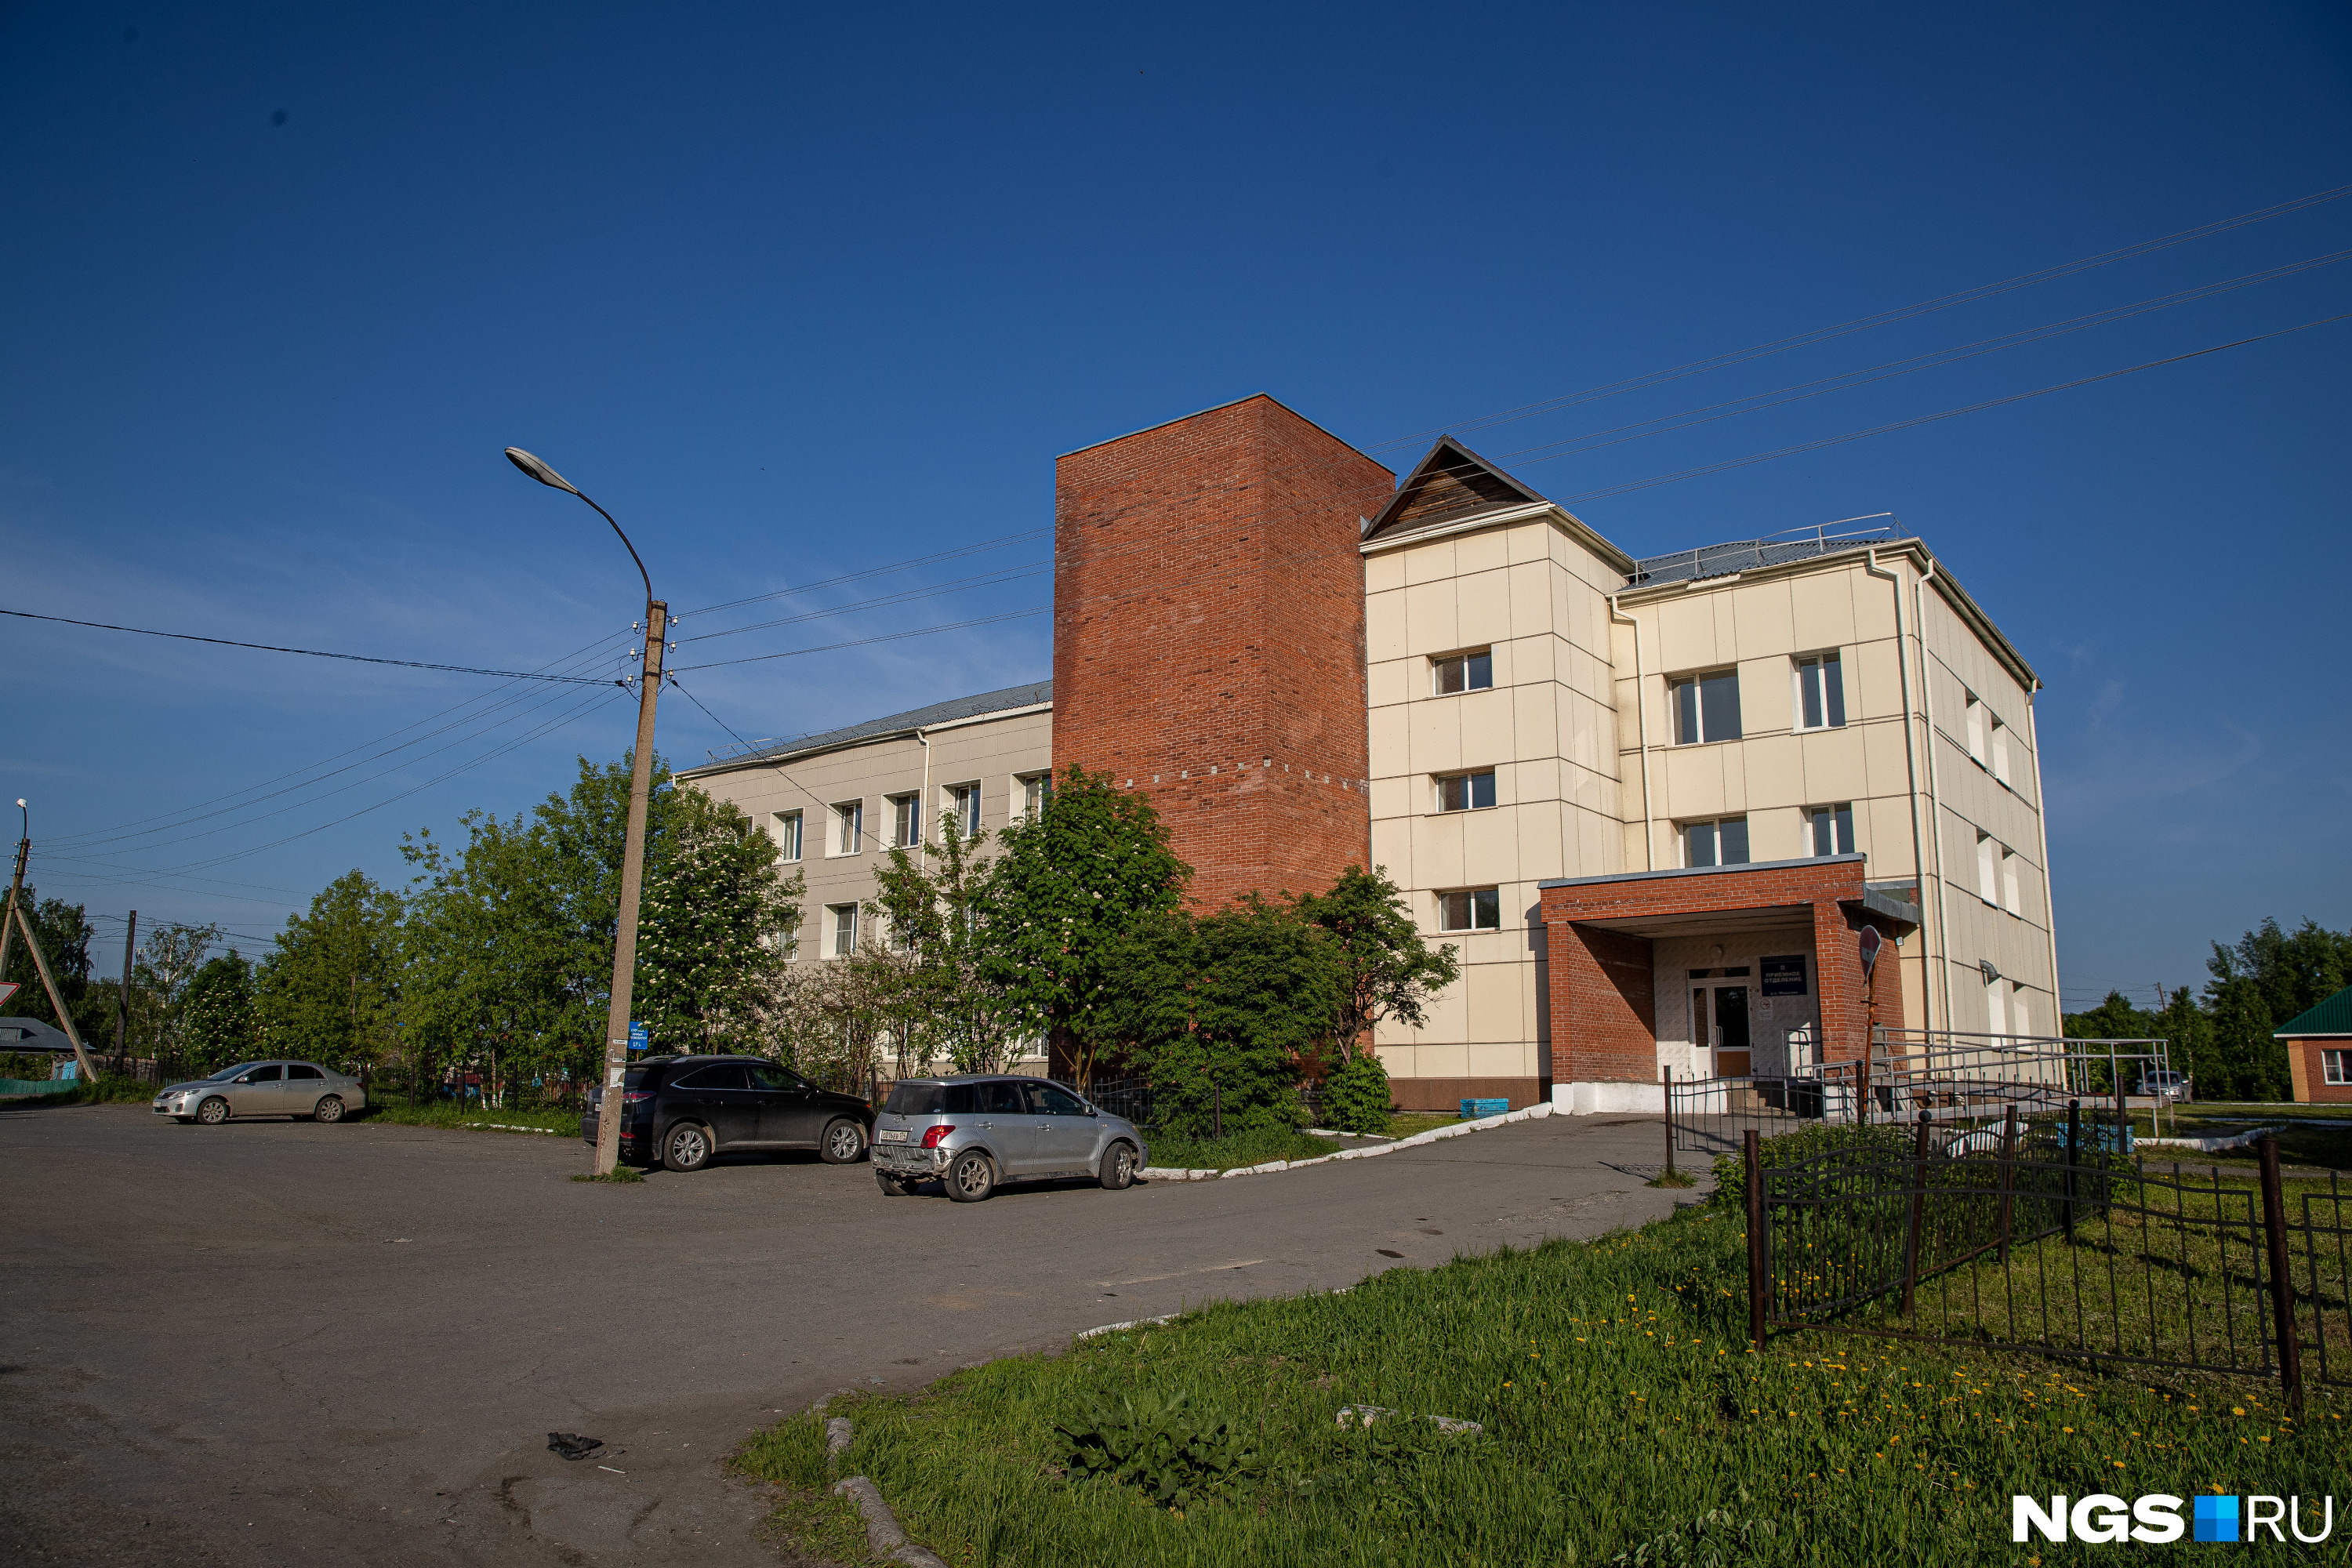 Мошковская больница, около которой дежурили представители азербайджанской диаспоры